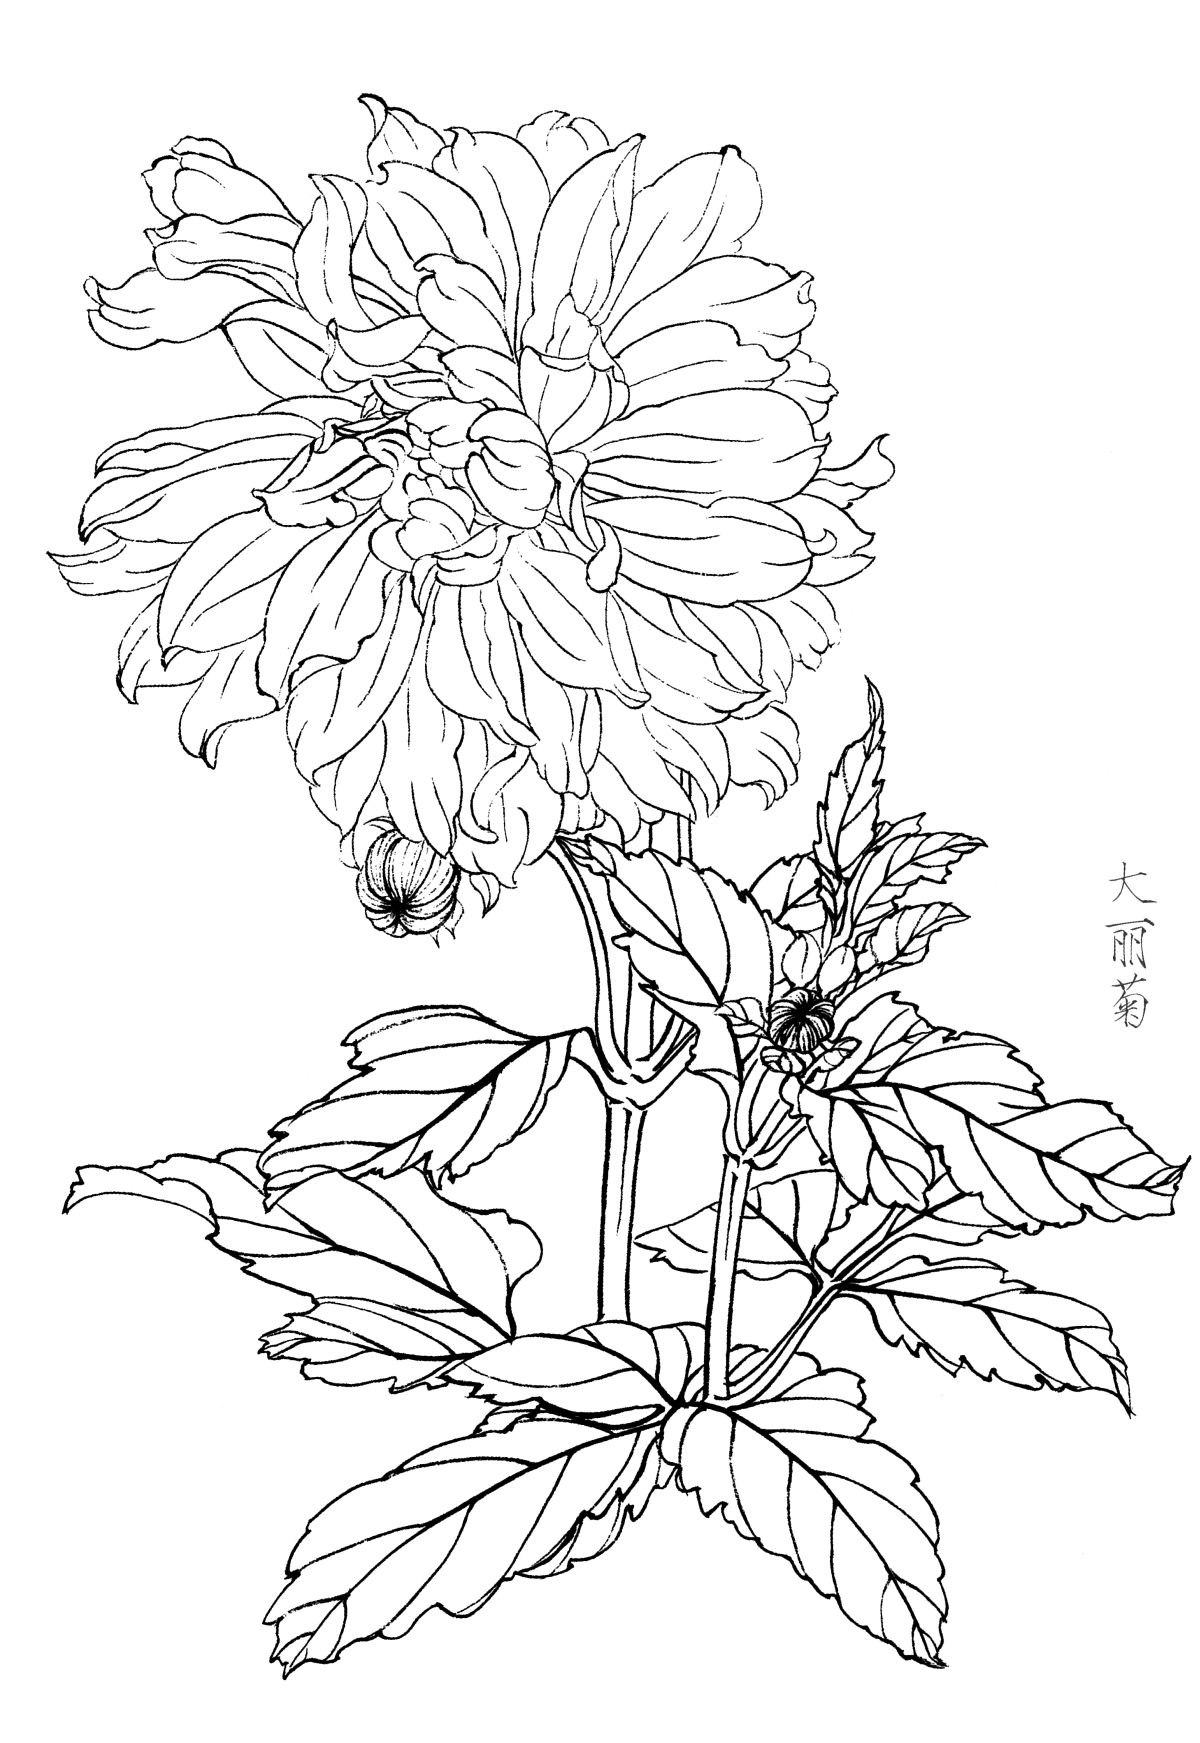 绘画学习素材！梅兰竹菊四君子白描工笔花卉底稿160张打包